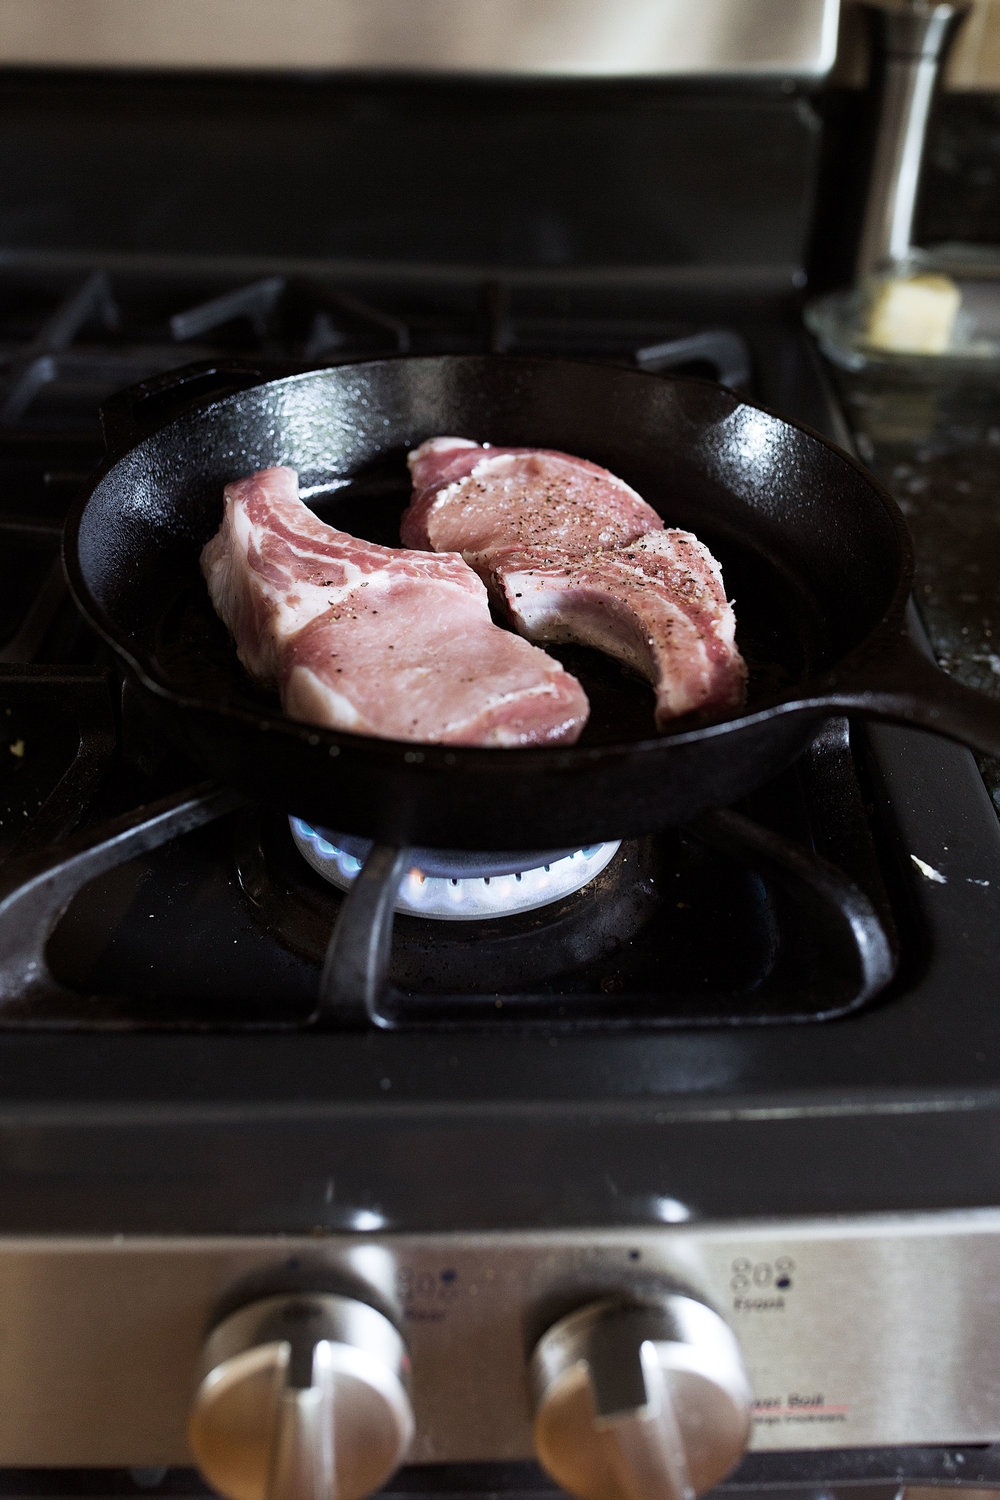 bone-in pork chops seared in cast iron skillet